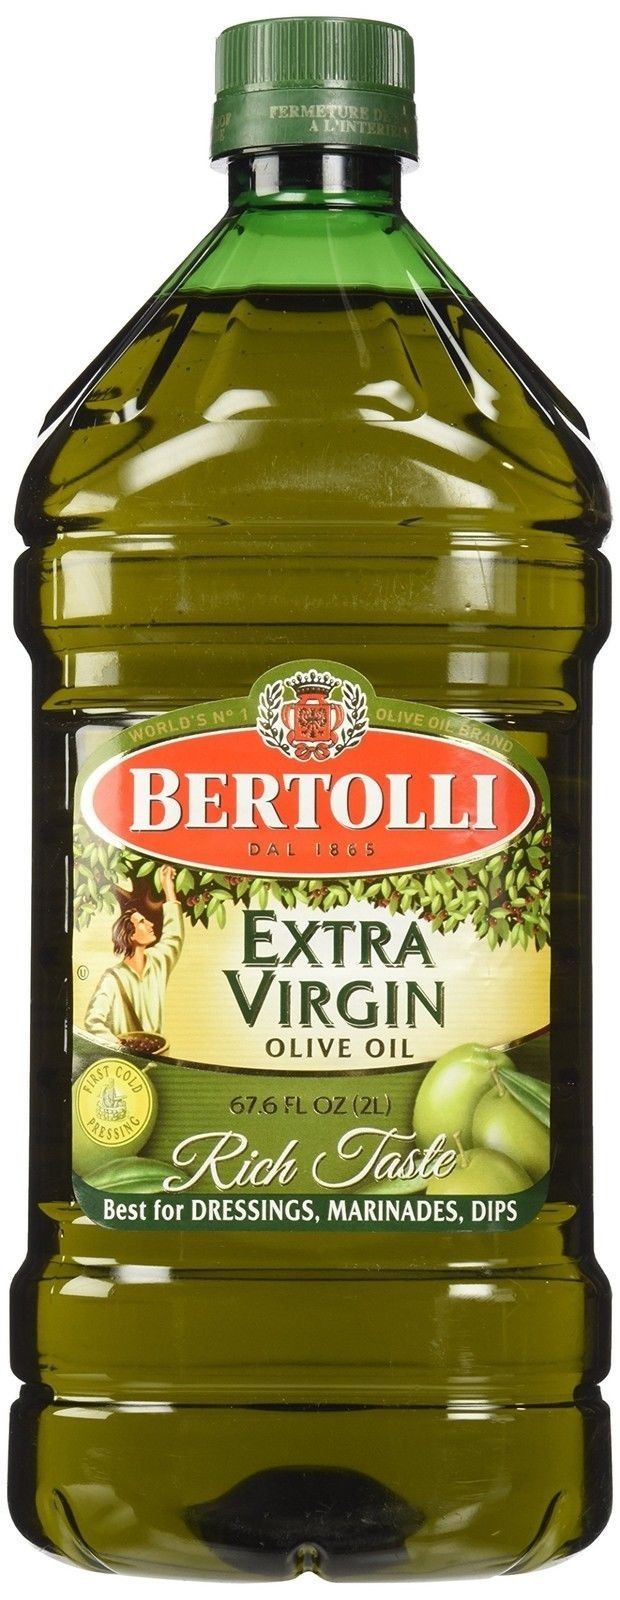 olive oil hair relaxer